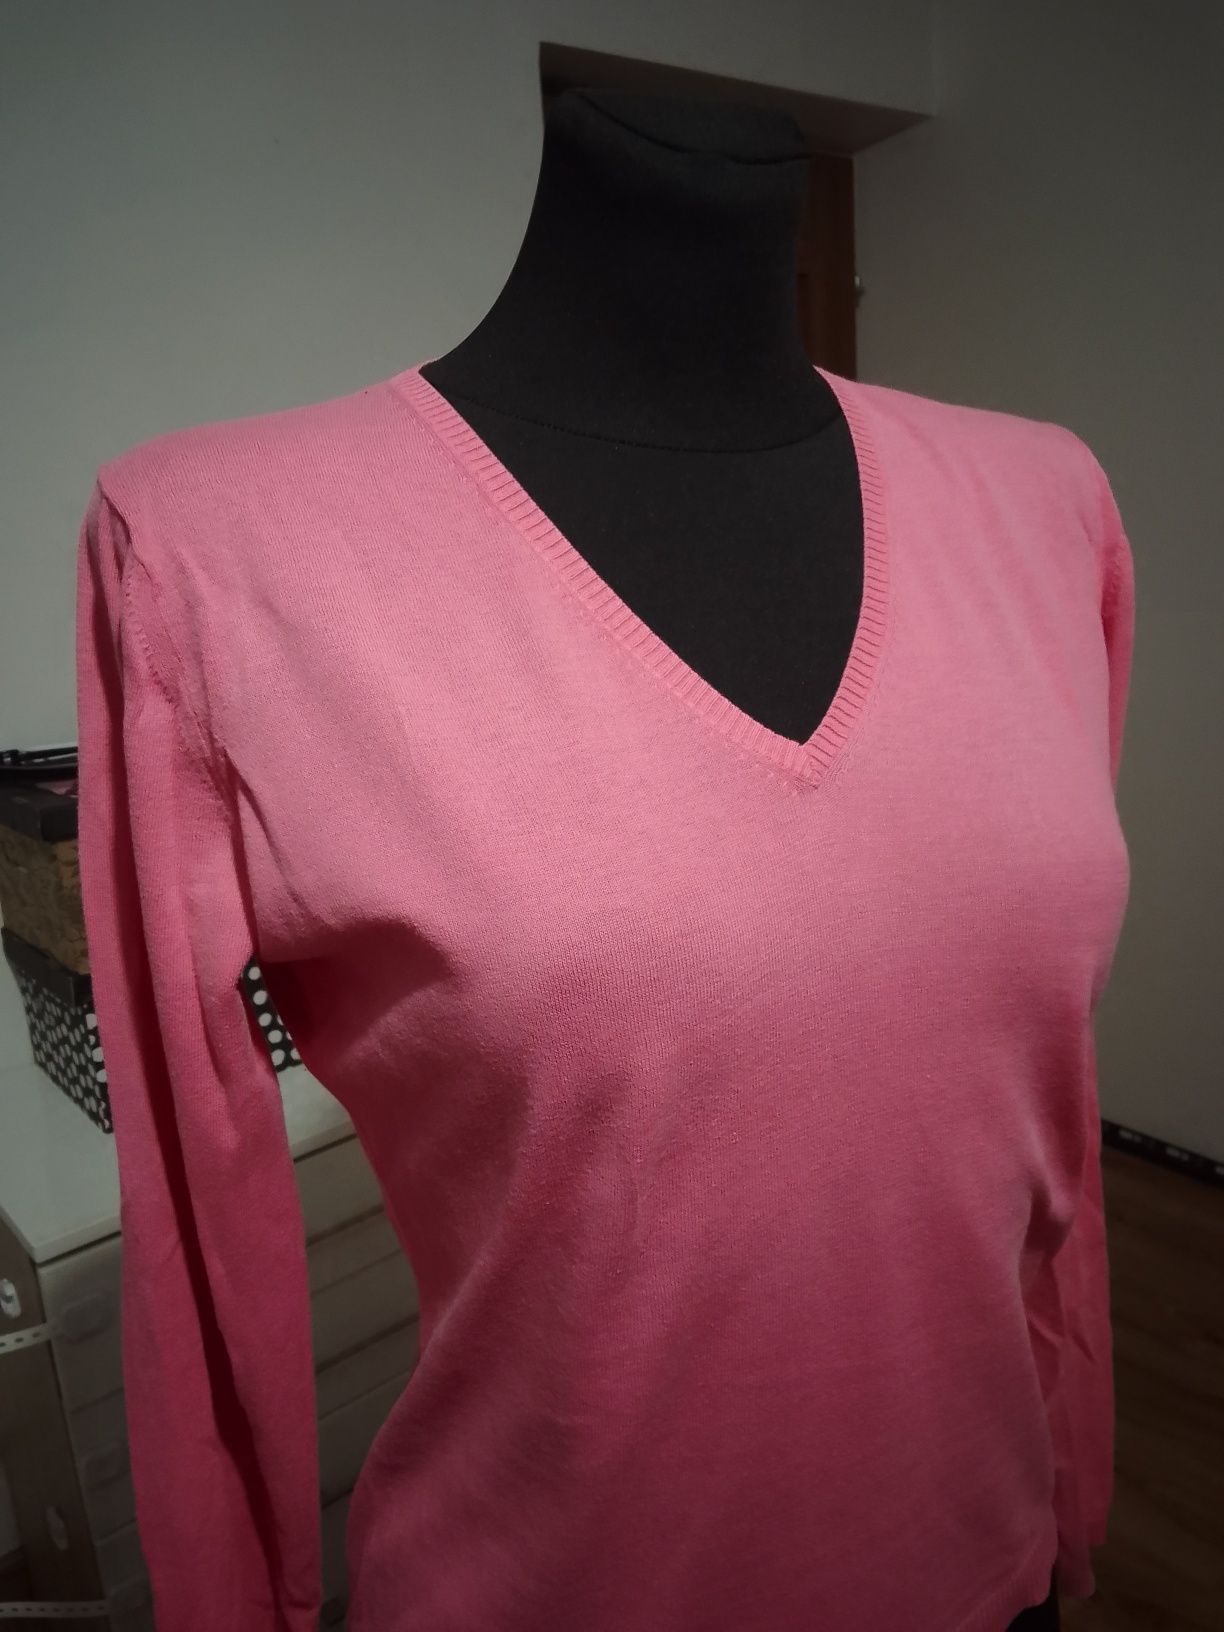 Allude różowy sweter bluzka damska S 100% bawełna